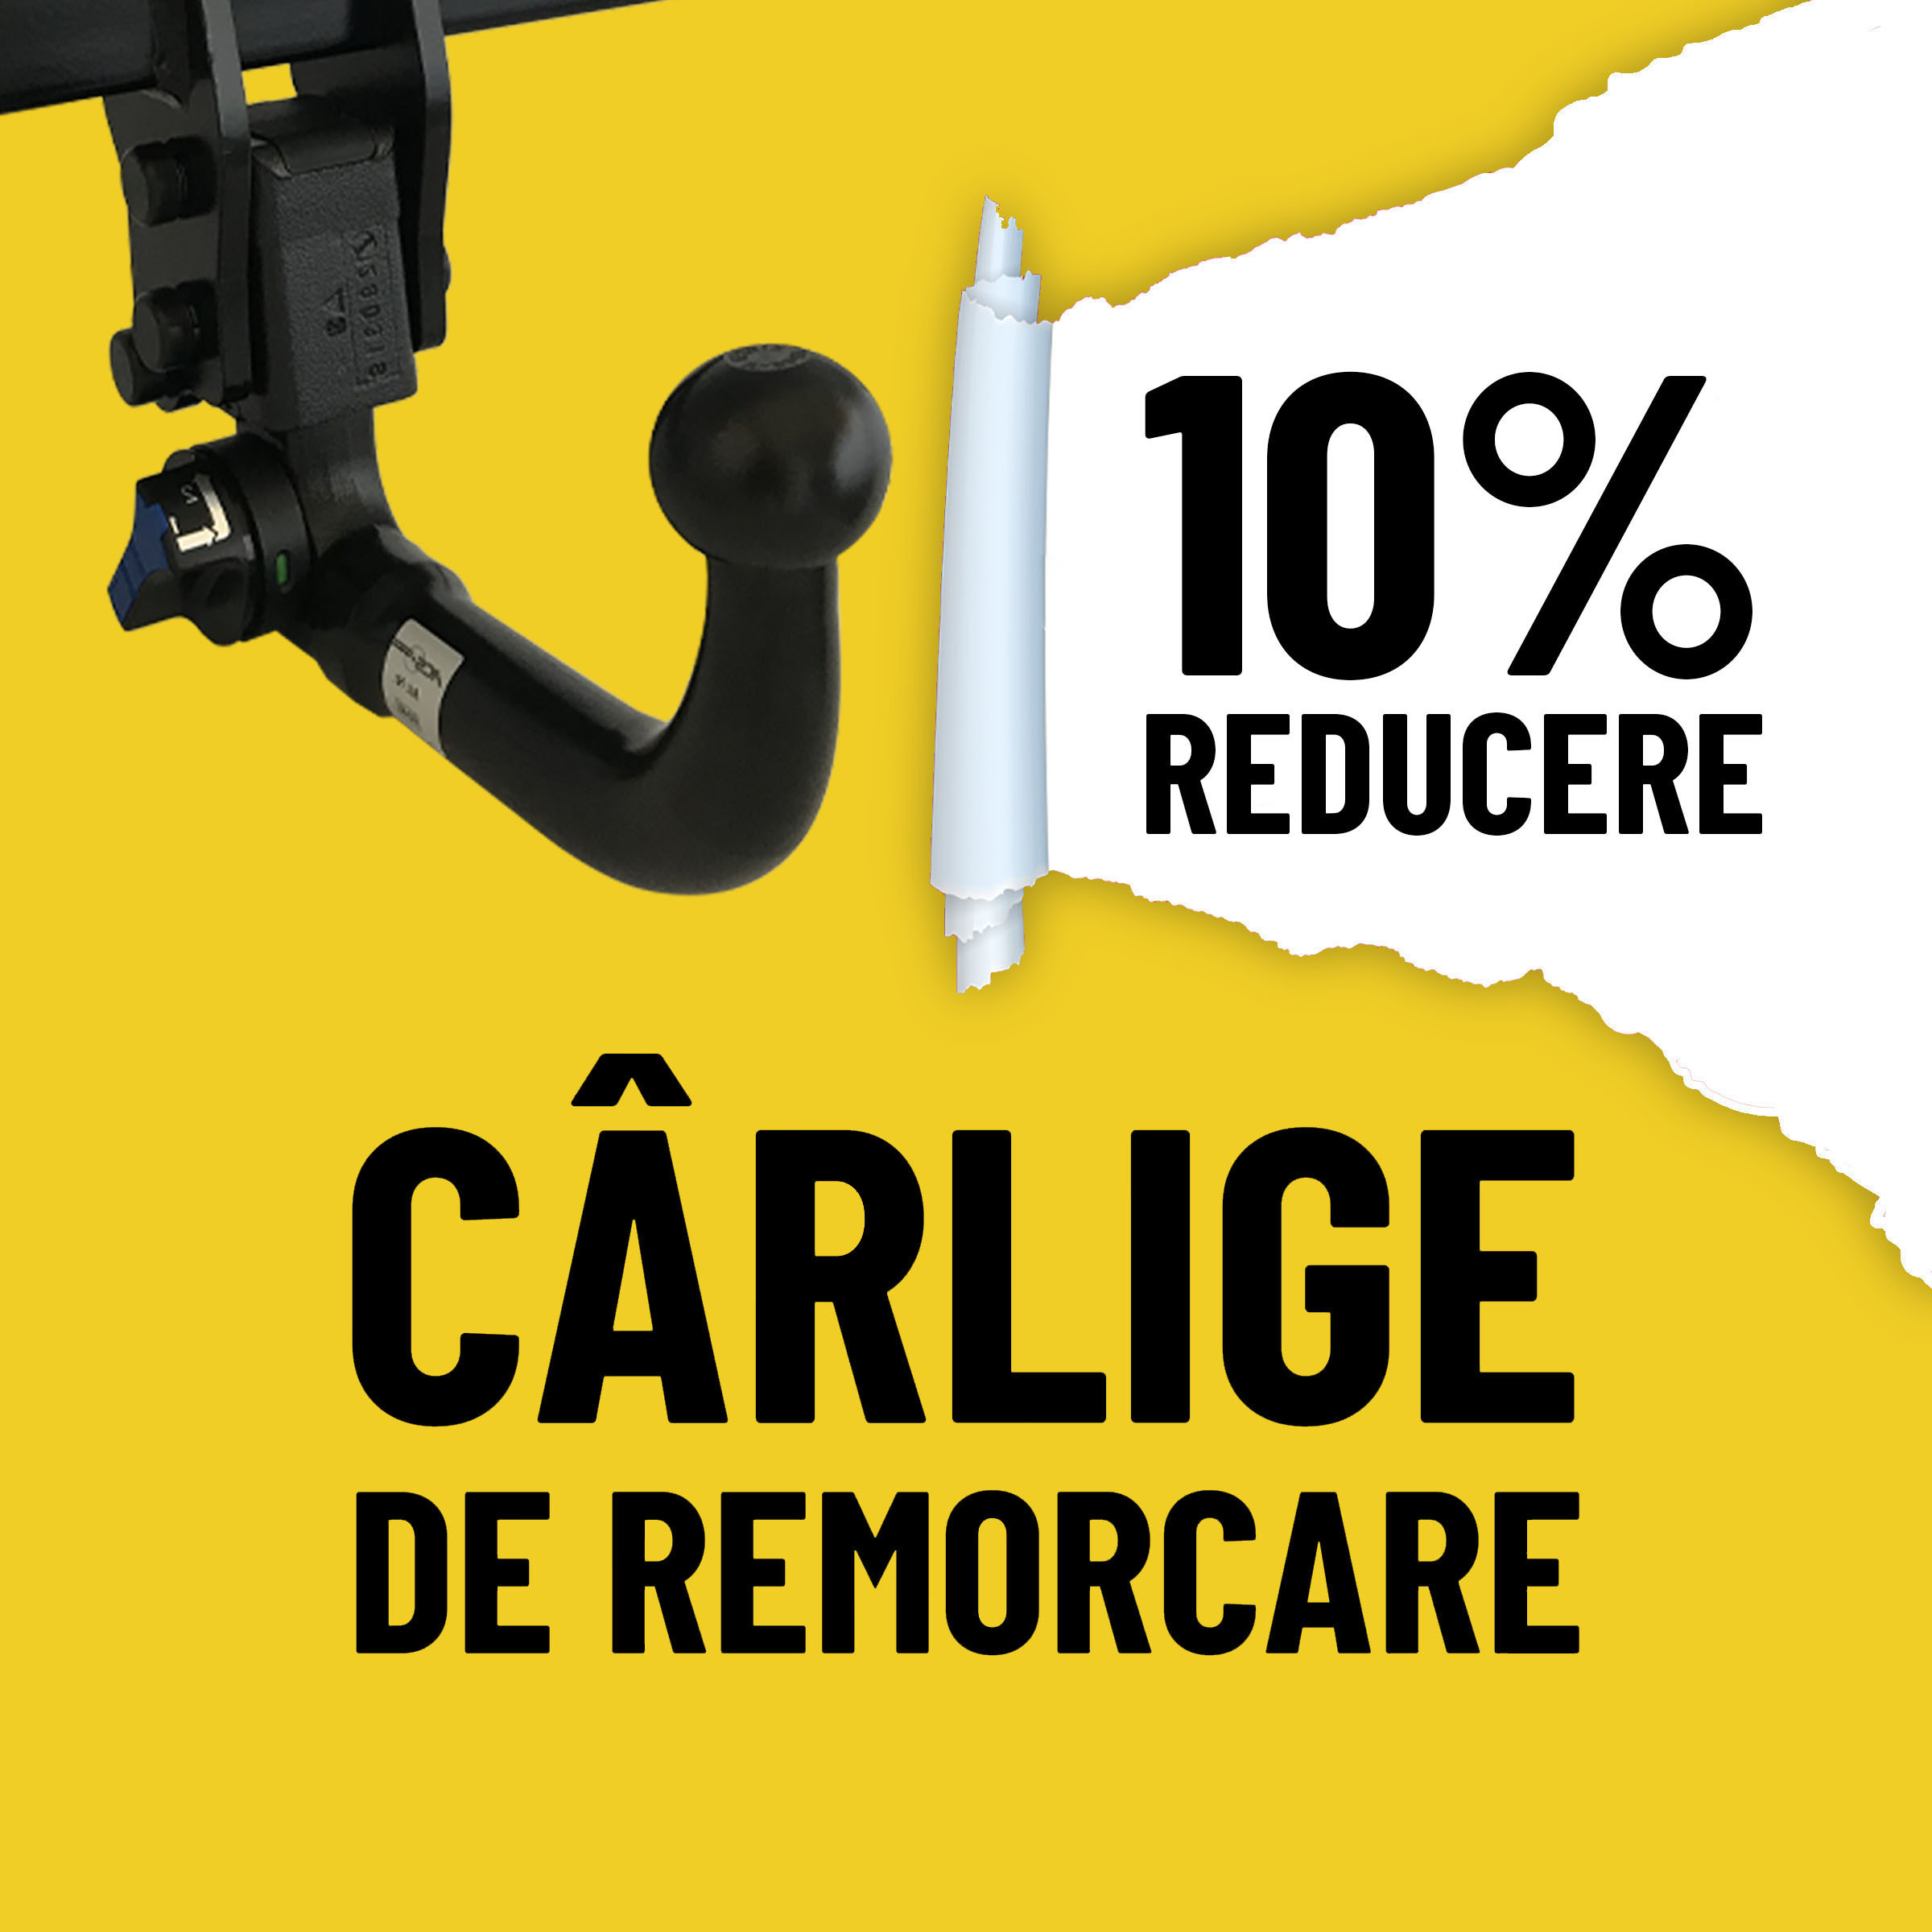 CARLIGE DE REMORCARE -10%